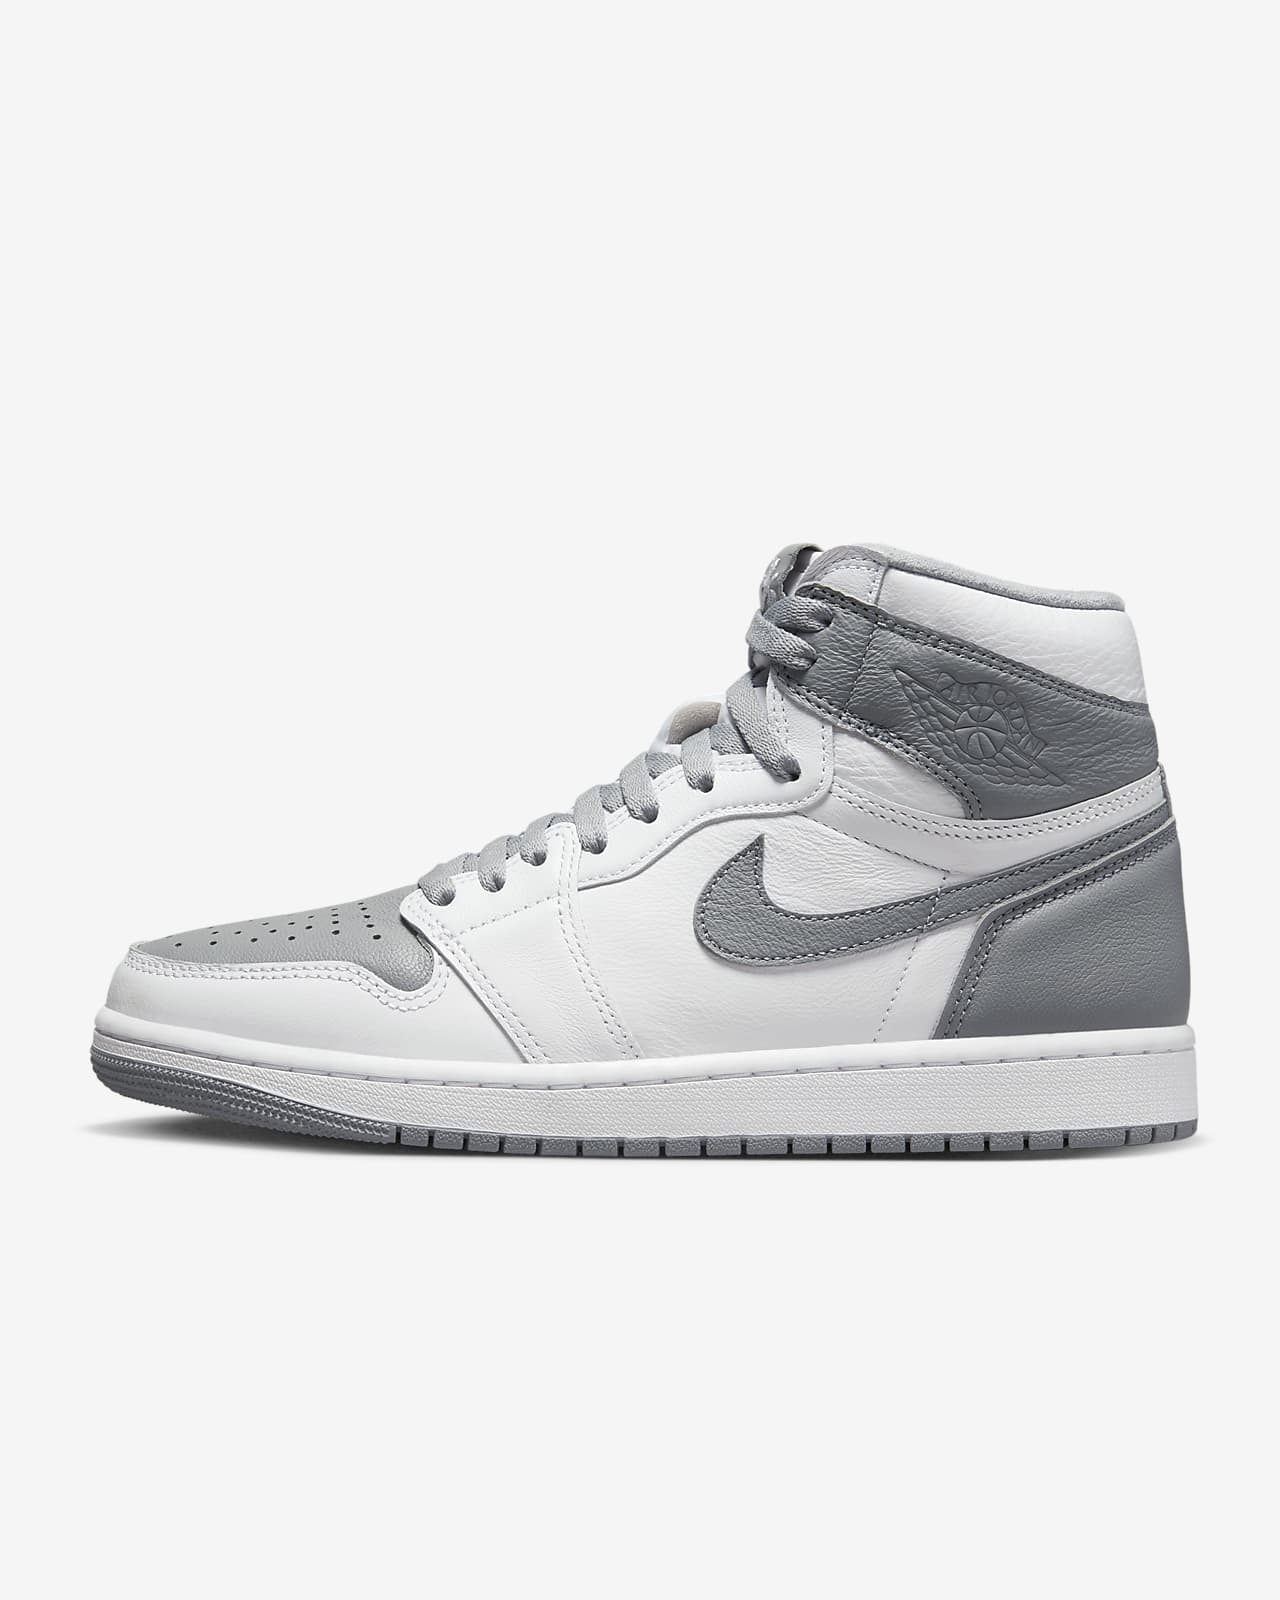 Calzado Air Jordan OG. Nike.com